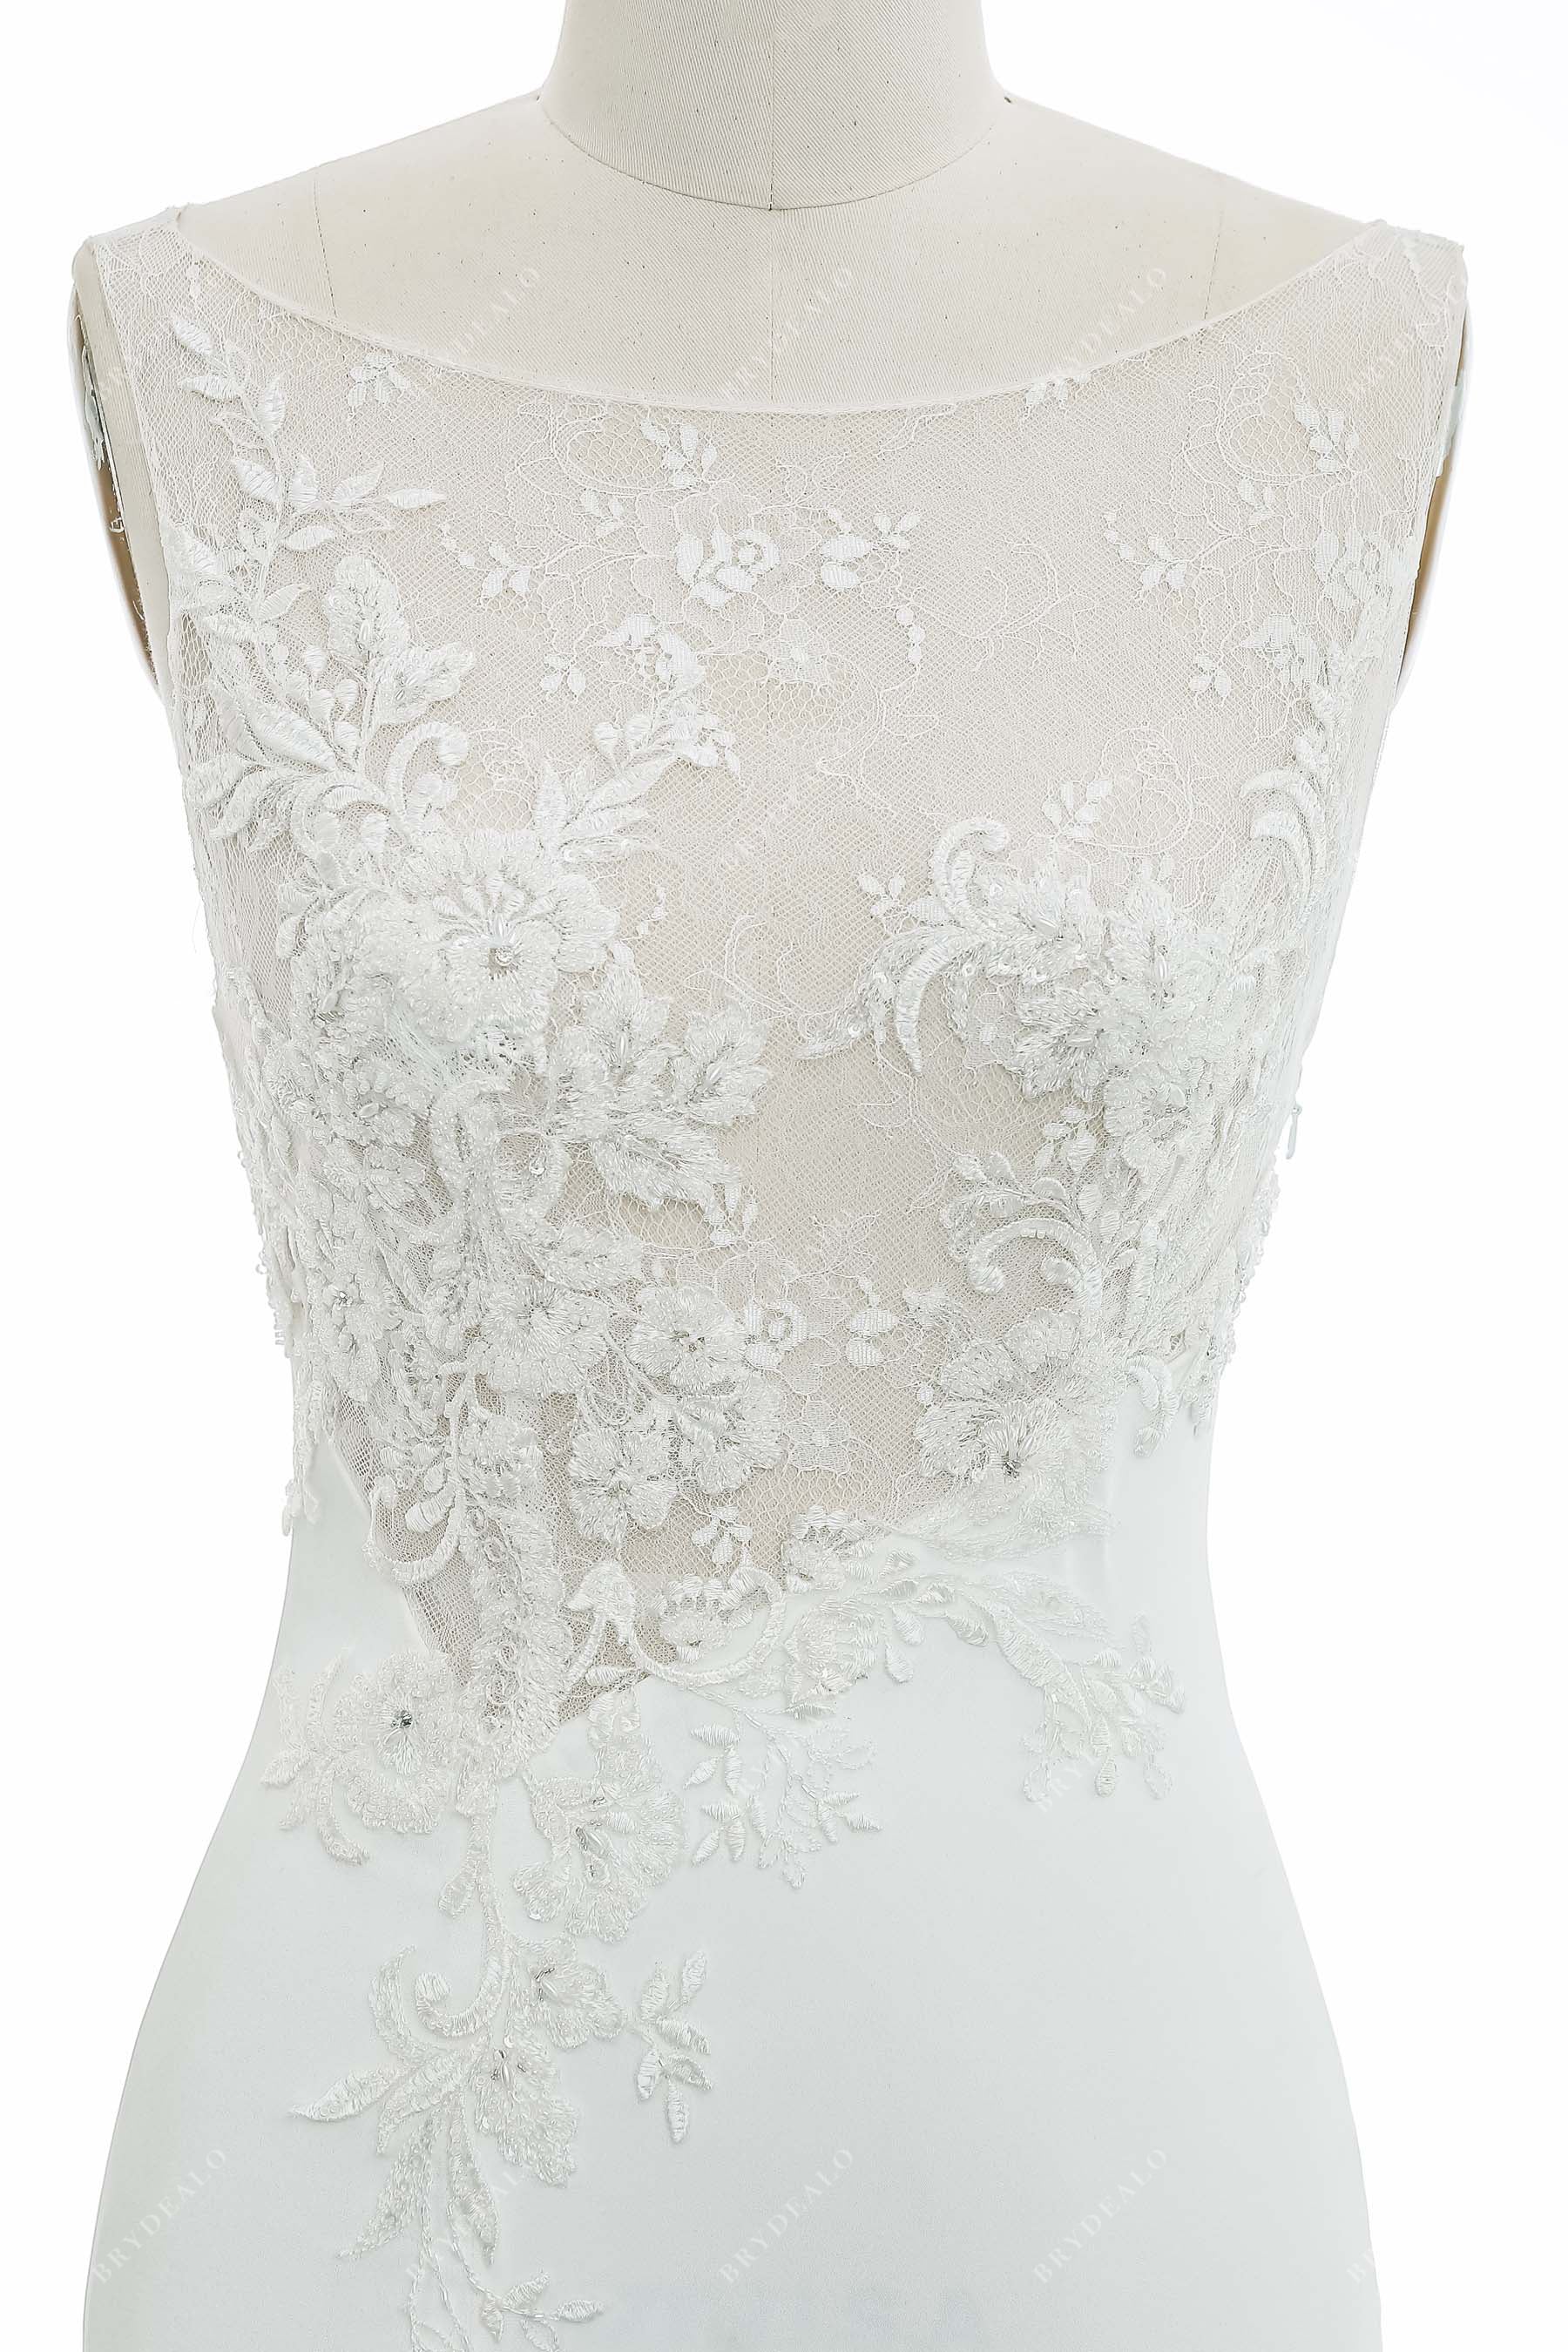 Illusion Beaded Lace Sleeveless Wedding Dress